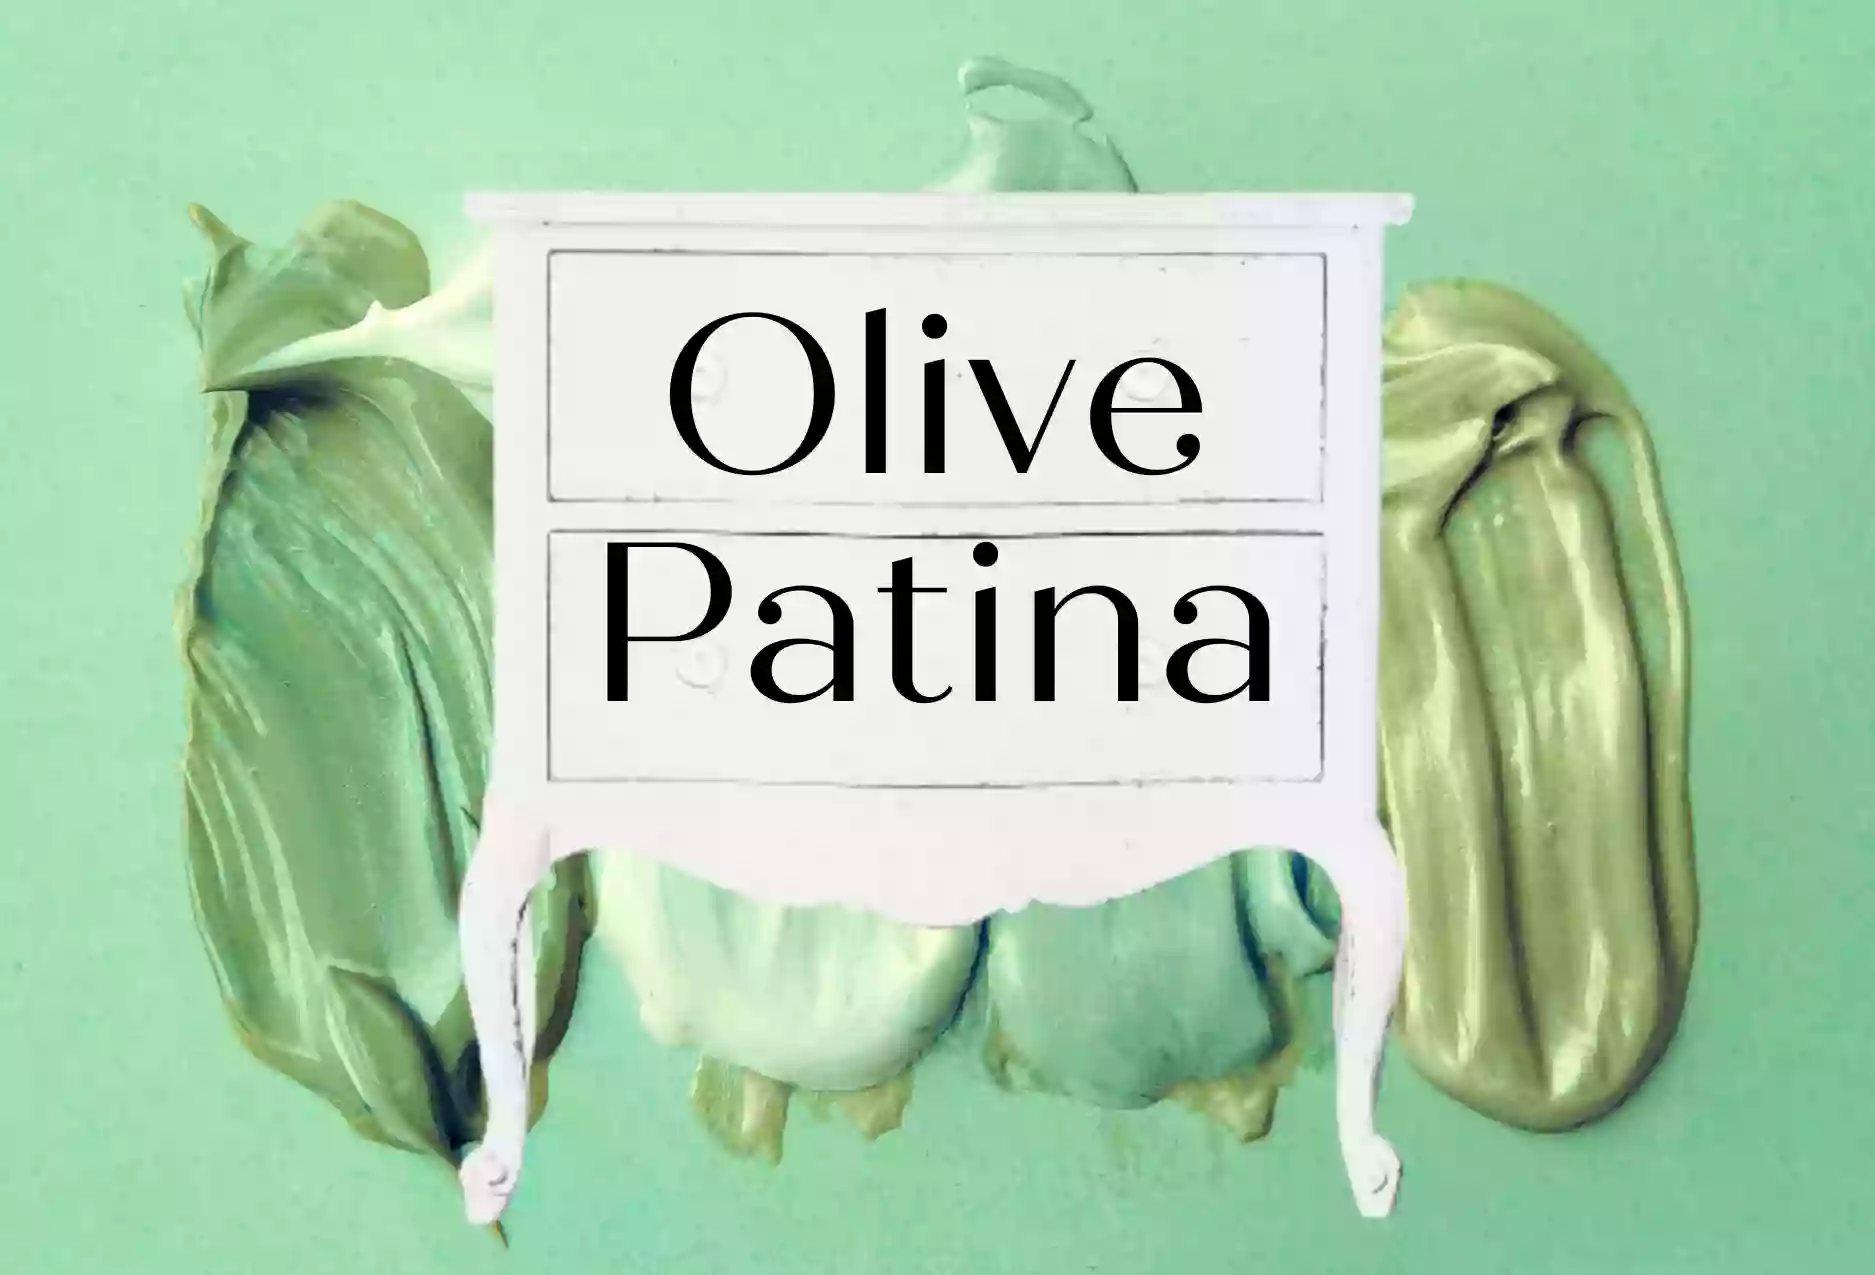 Olive Patina Denver